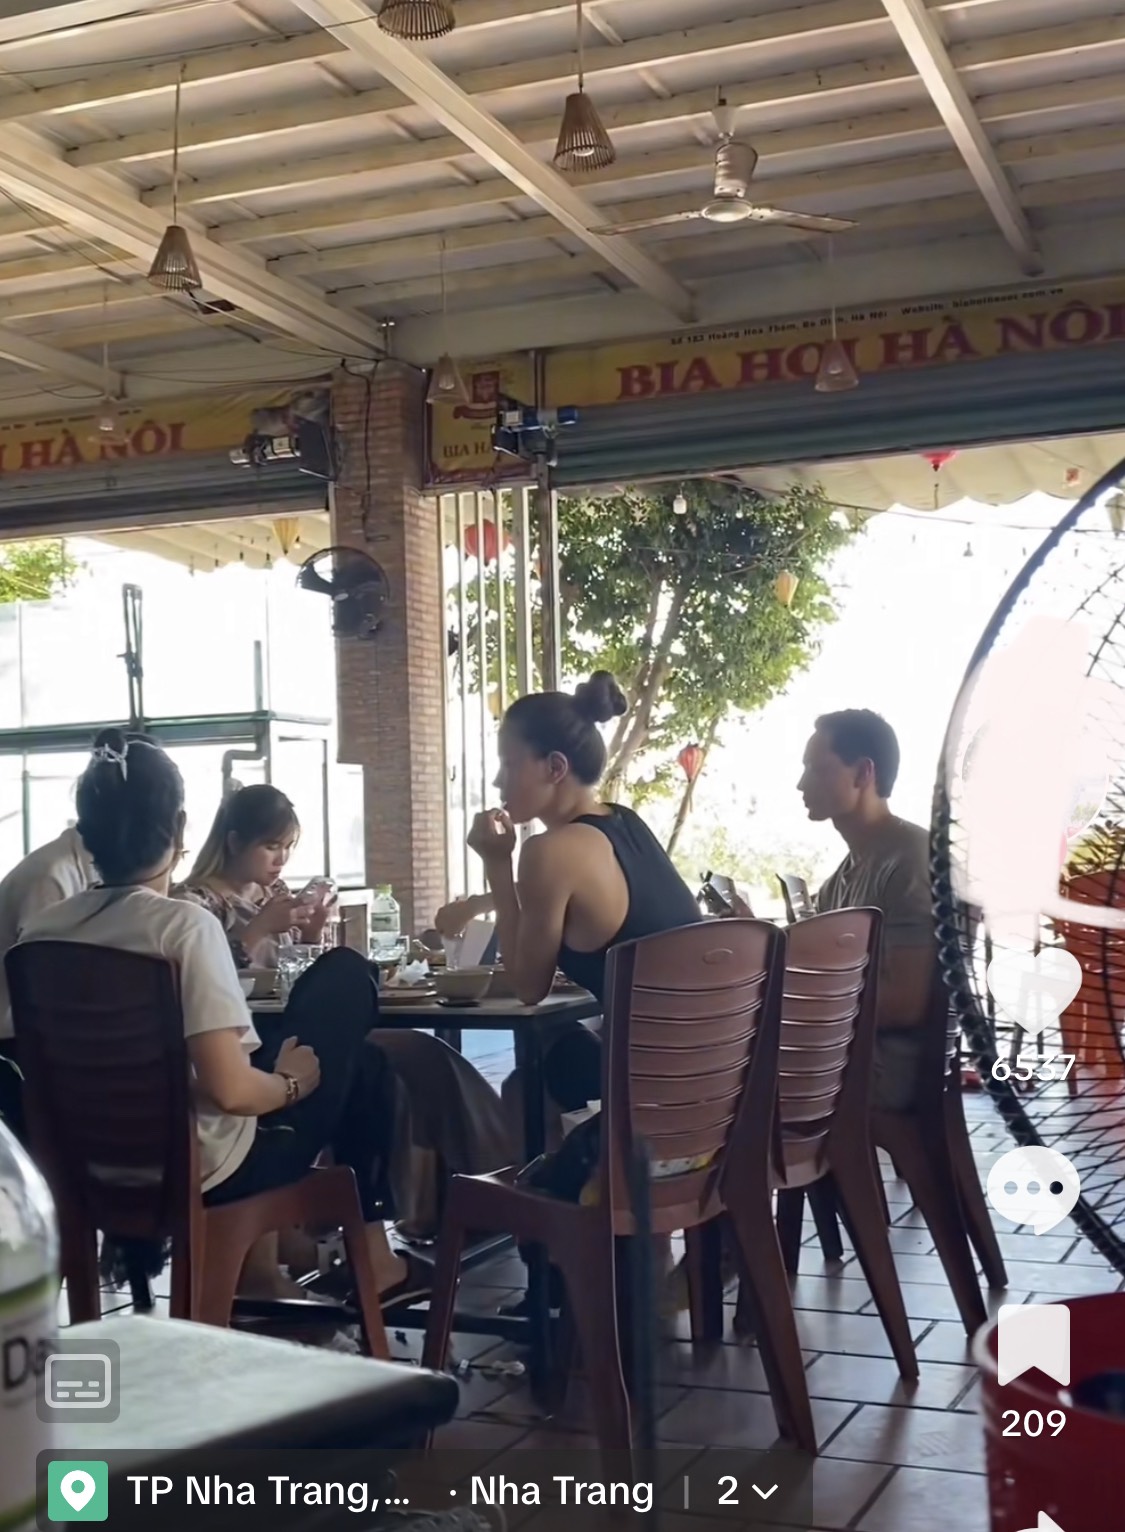 Một hàng hải sản bình dân ở Nha Trang có gì mà được Hồ Ngọc Hà bất ngờ ghé tới? - Ảnh 1.